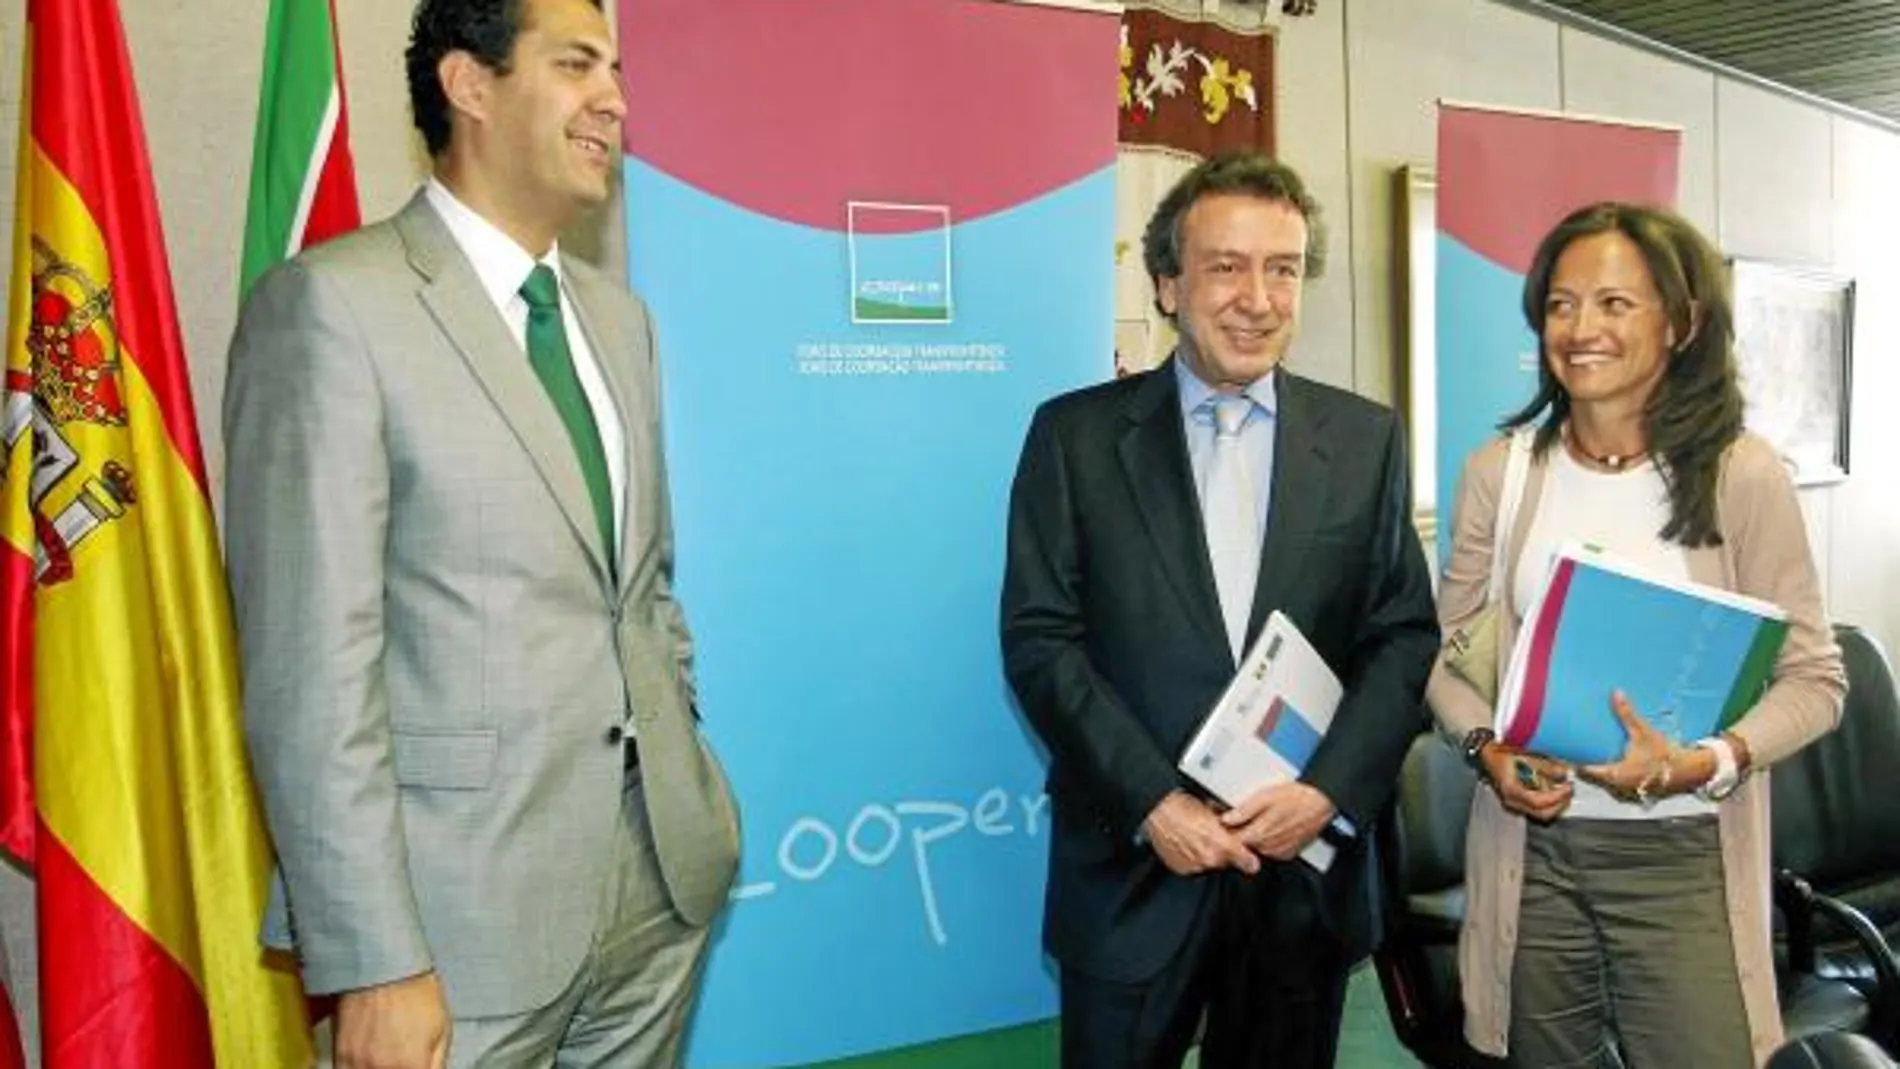 José Antonio de Santiago-Juárez, María de Diego y Alberto de Castro presentan el Foro Coopera en Zamora